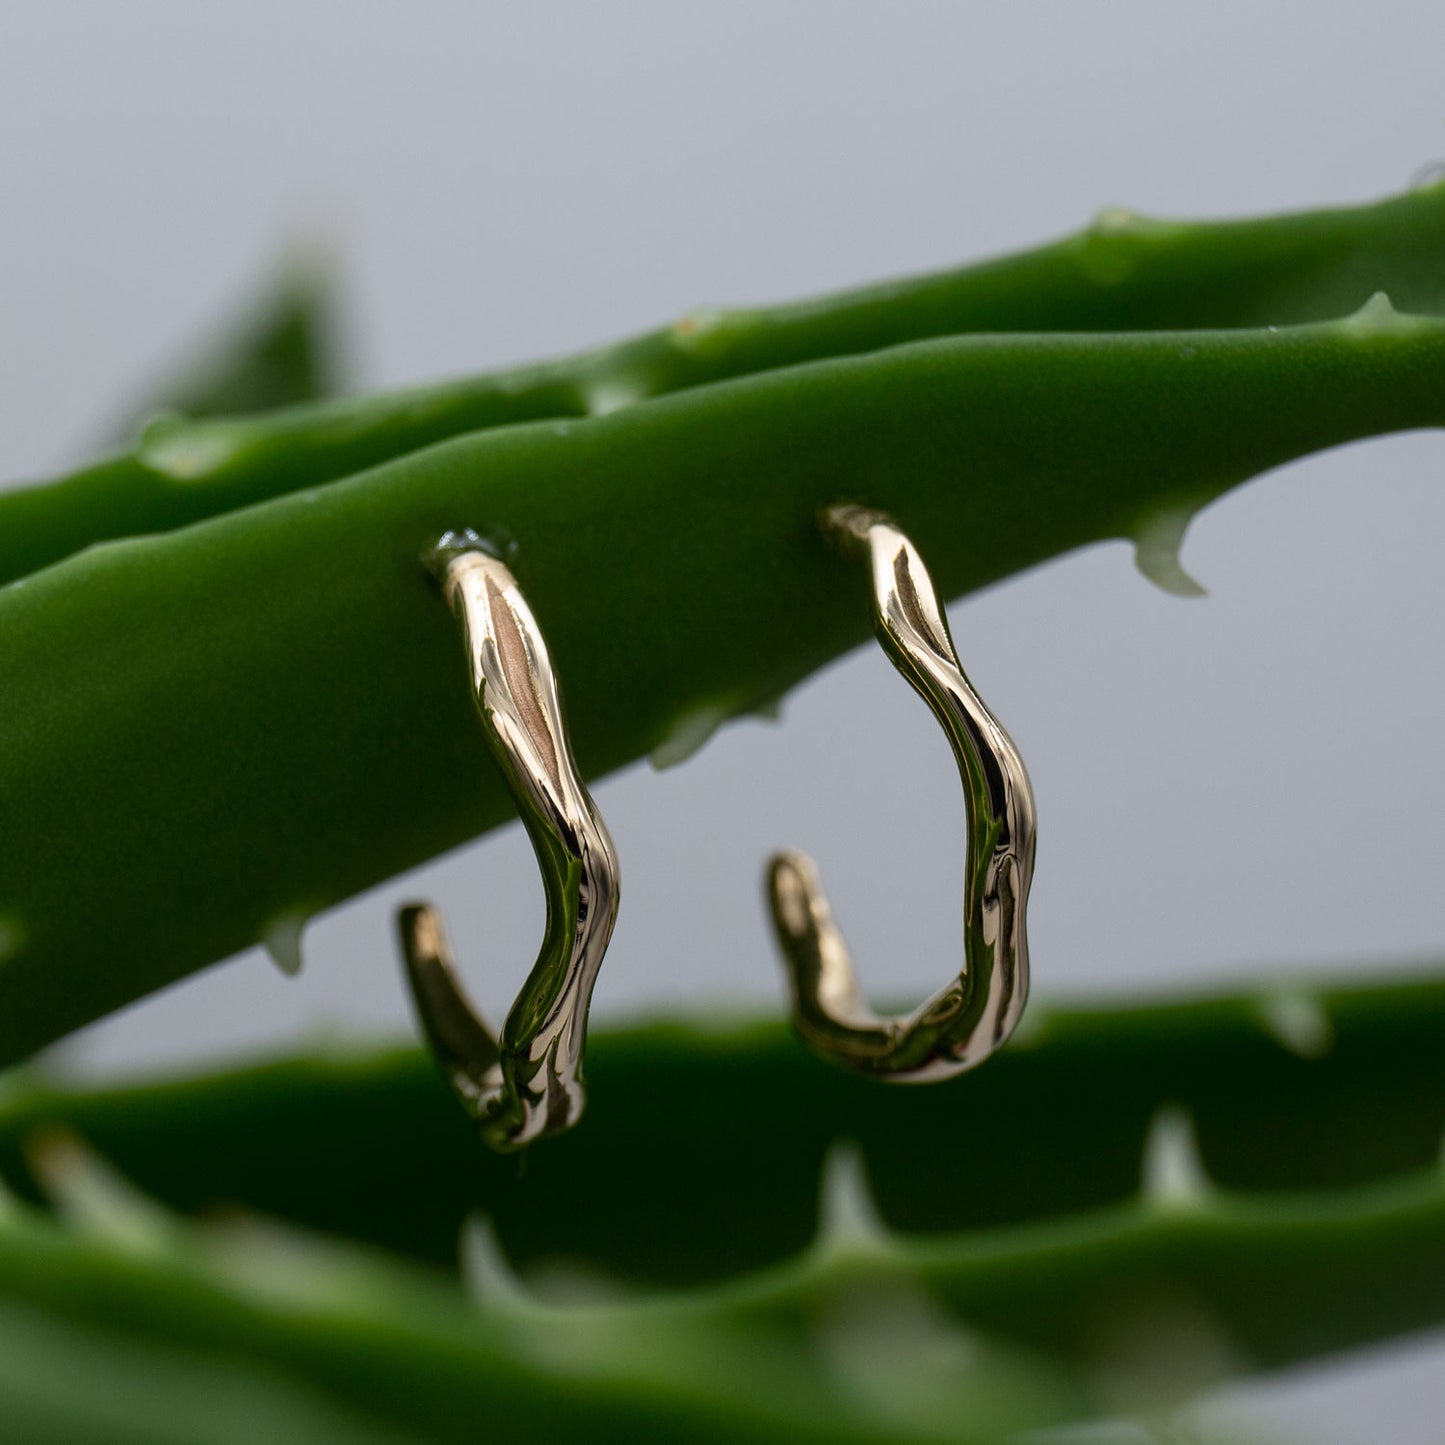 To øreringe hoops i guld hænger på en aloe vera plante. Øreringene er formet som creoler, de fremstår organiske og skinner. Design af Michell Liljefelt